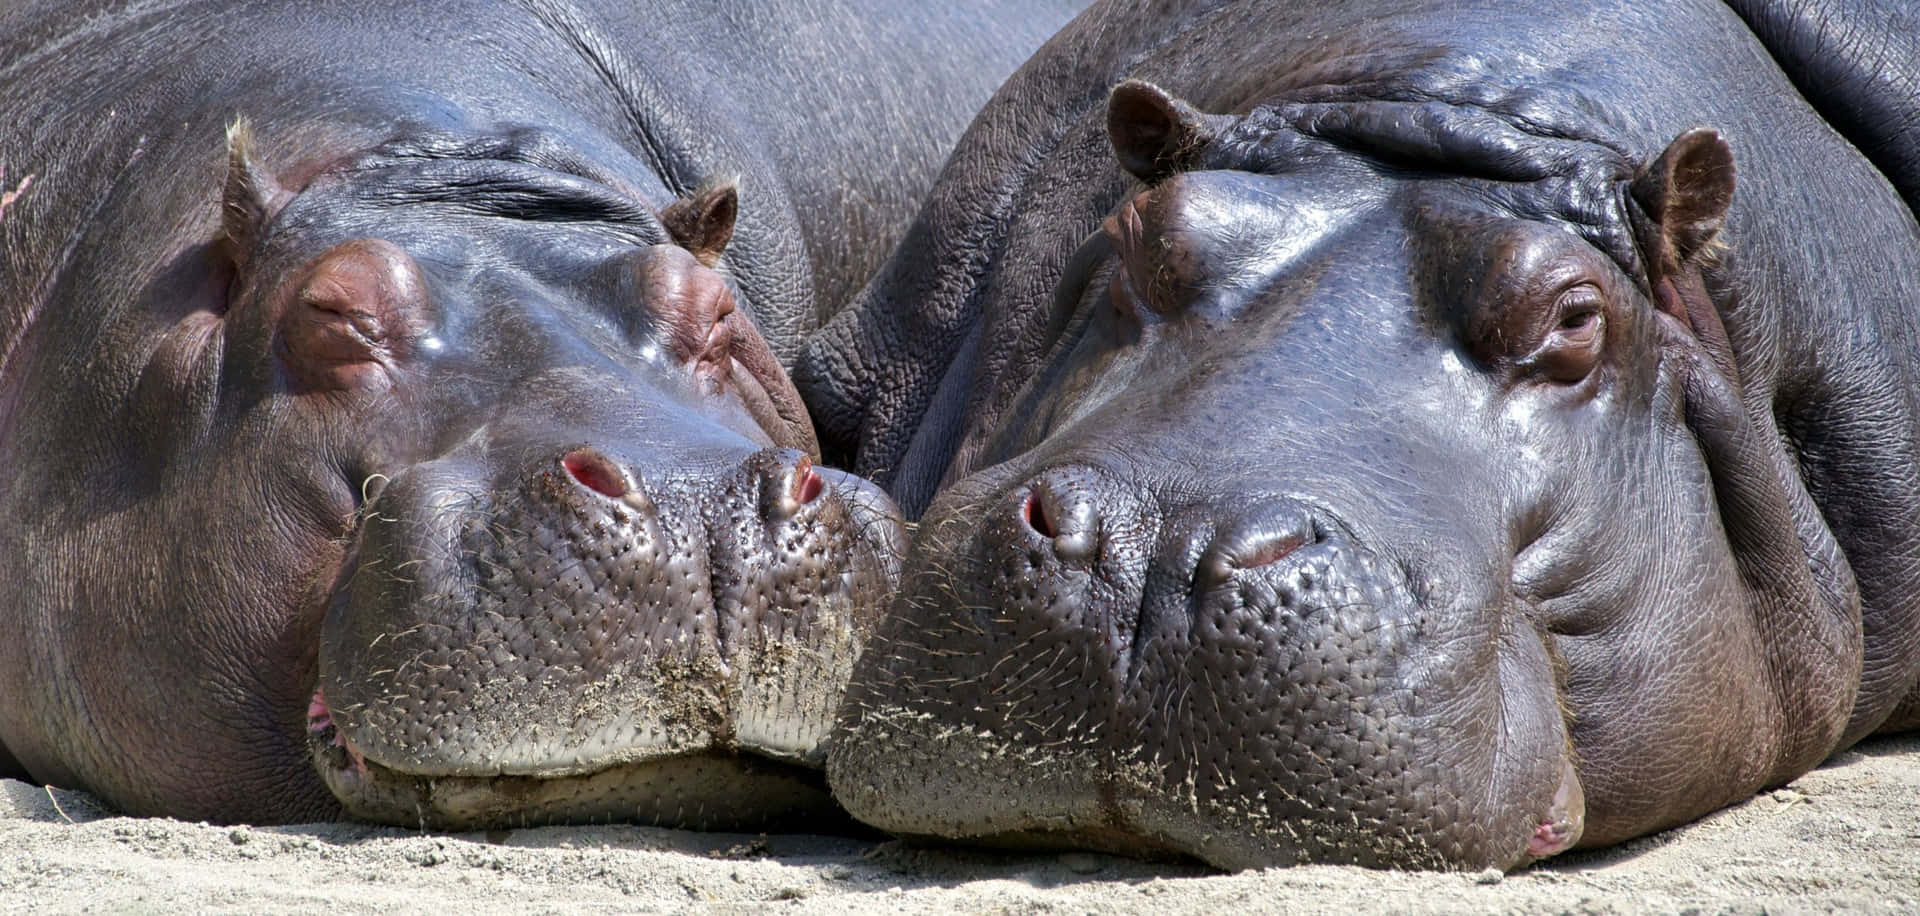 Unafotografía De Un Hipopótamo Relajándose En El Agua.